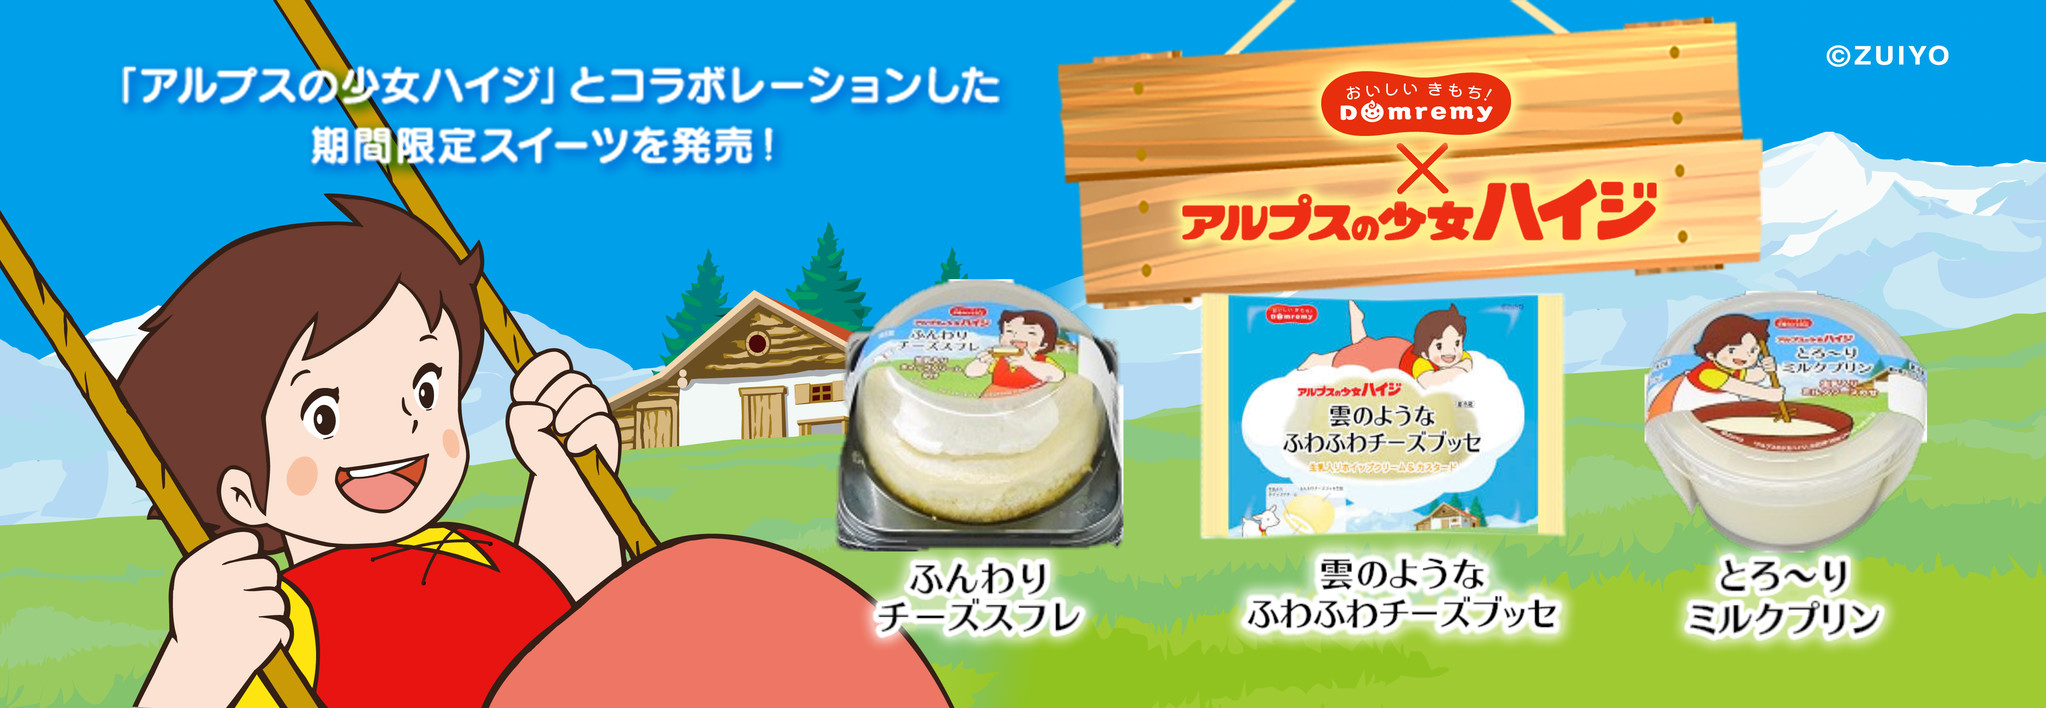 名作アニメ アルプスの少女ハイジ コラボ 生乳入りホイップクリームを使用したふんわりとろ りスイーツ3商品 ドンレミーのプレスリリース